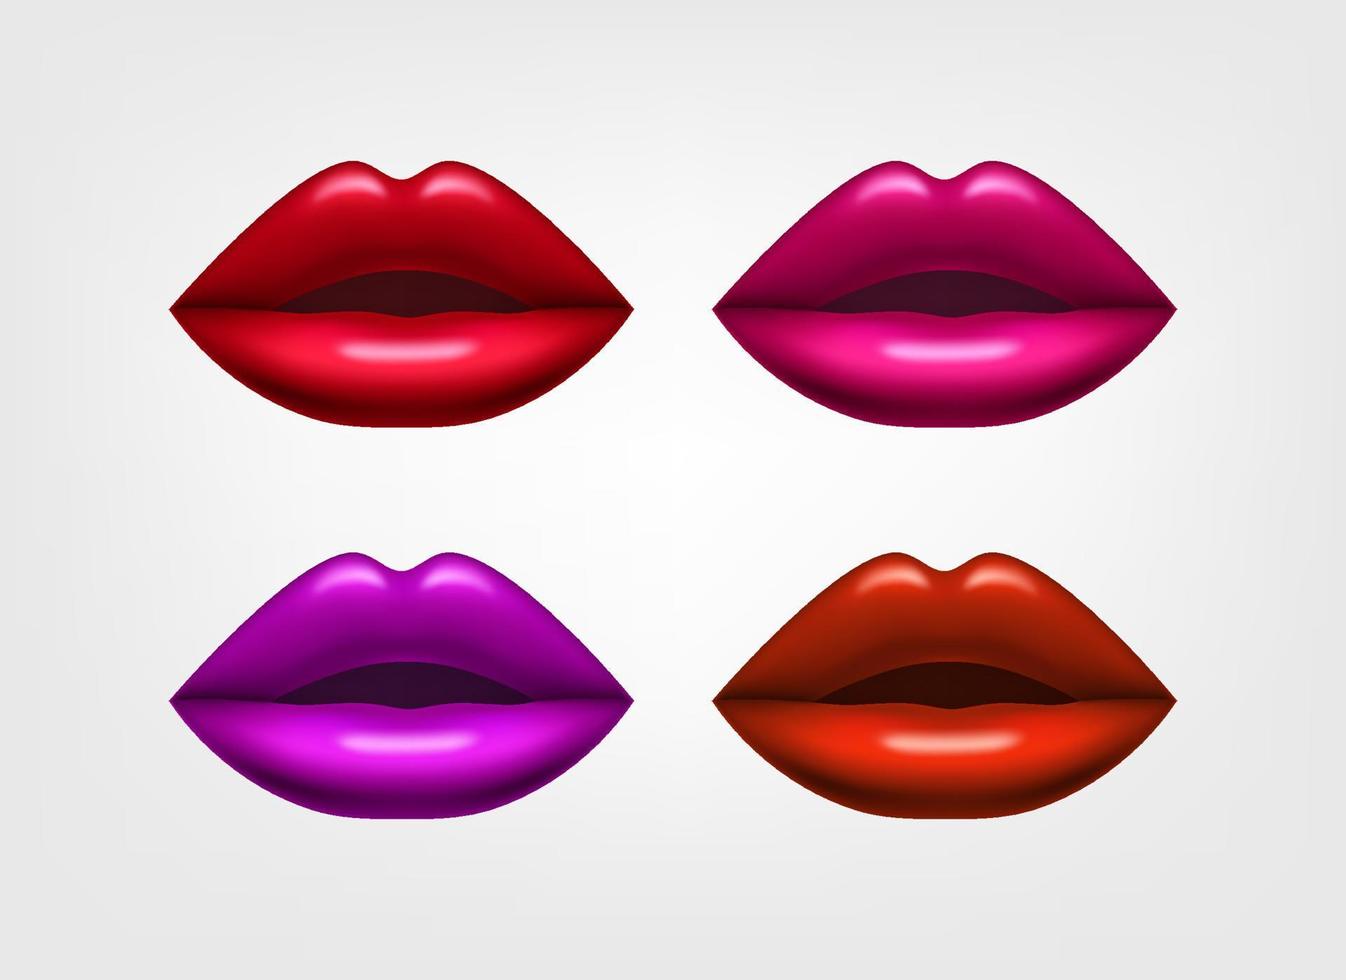 lèvres de femmes cplored avec du rouge à lèvres. illustration vectorielle 3d vecteur